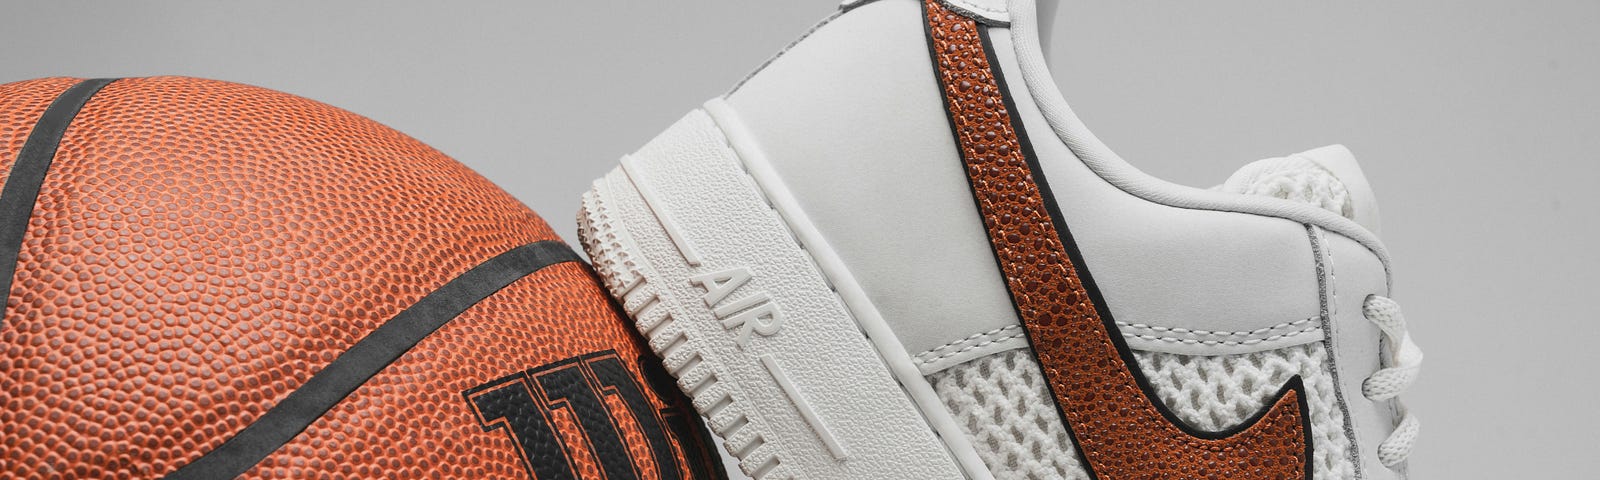 basketball and basketball shoes